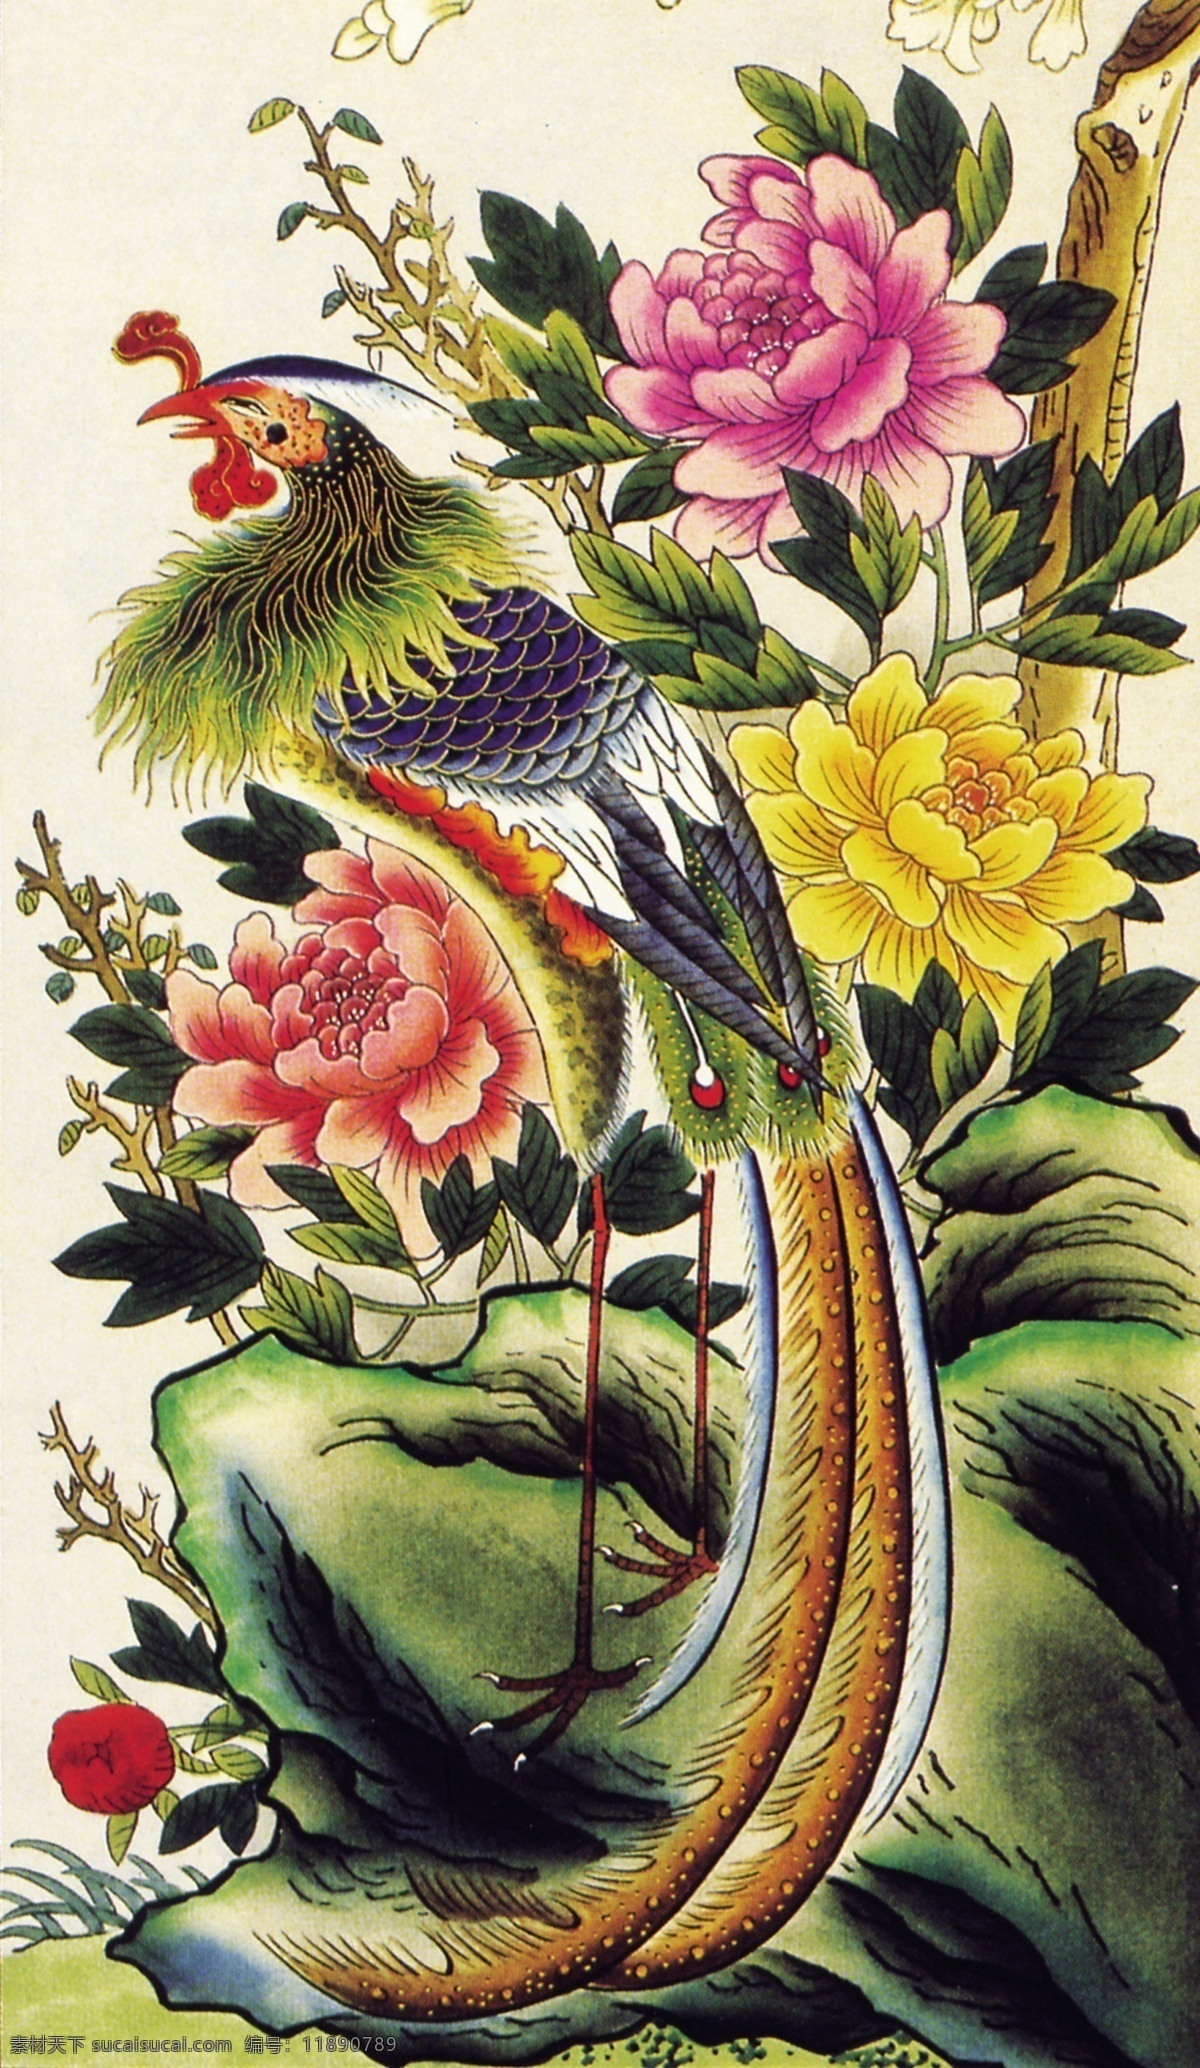 中式 元素 布纹 贴图 孔雀 开屏 刺绣 布纹图 牡丹 彩绘 屏风